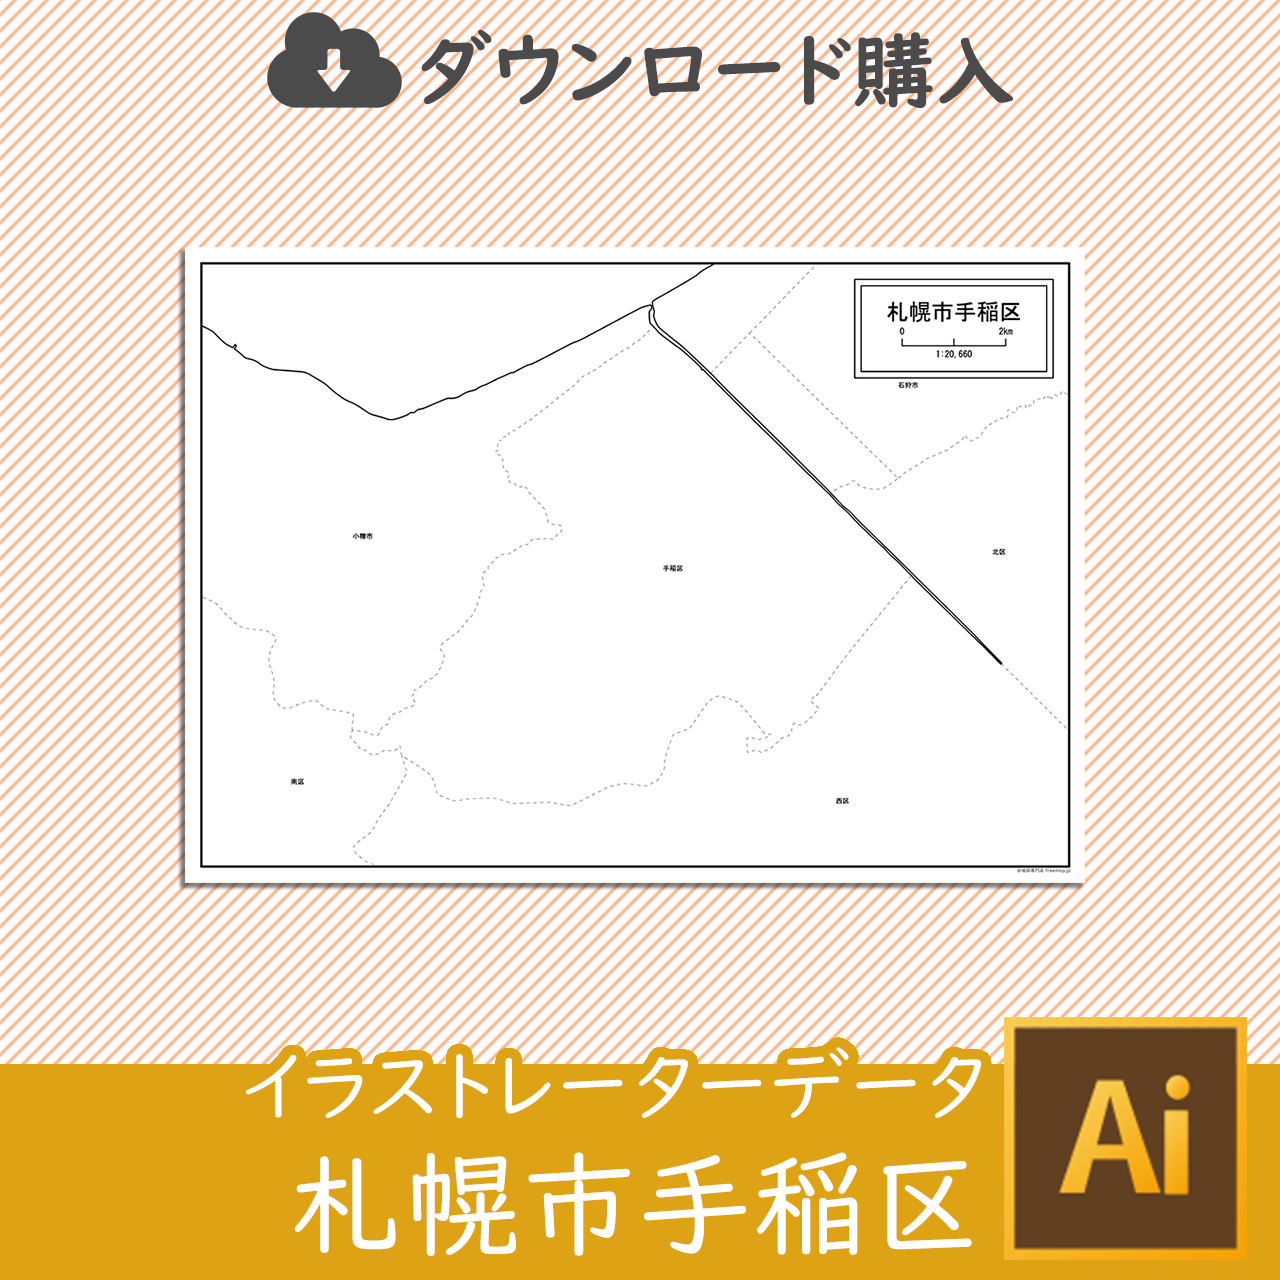 札幌市と10区セットのサムネイル画像